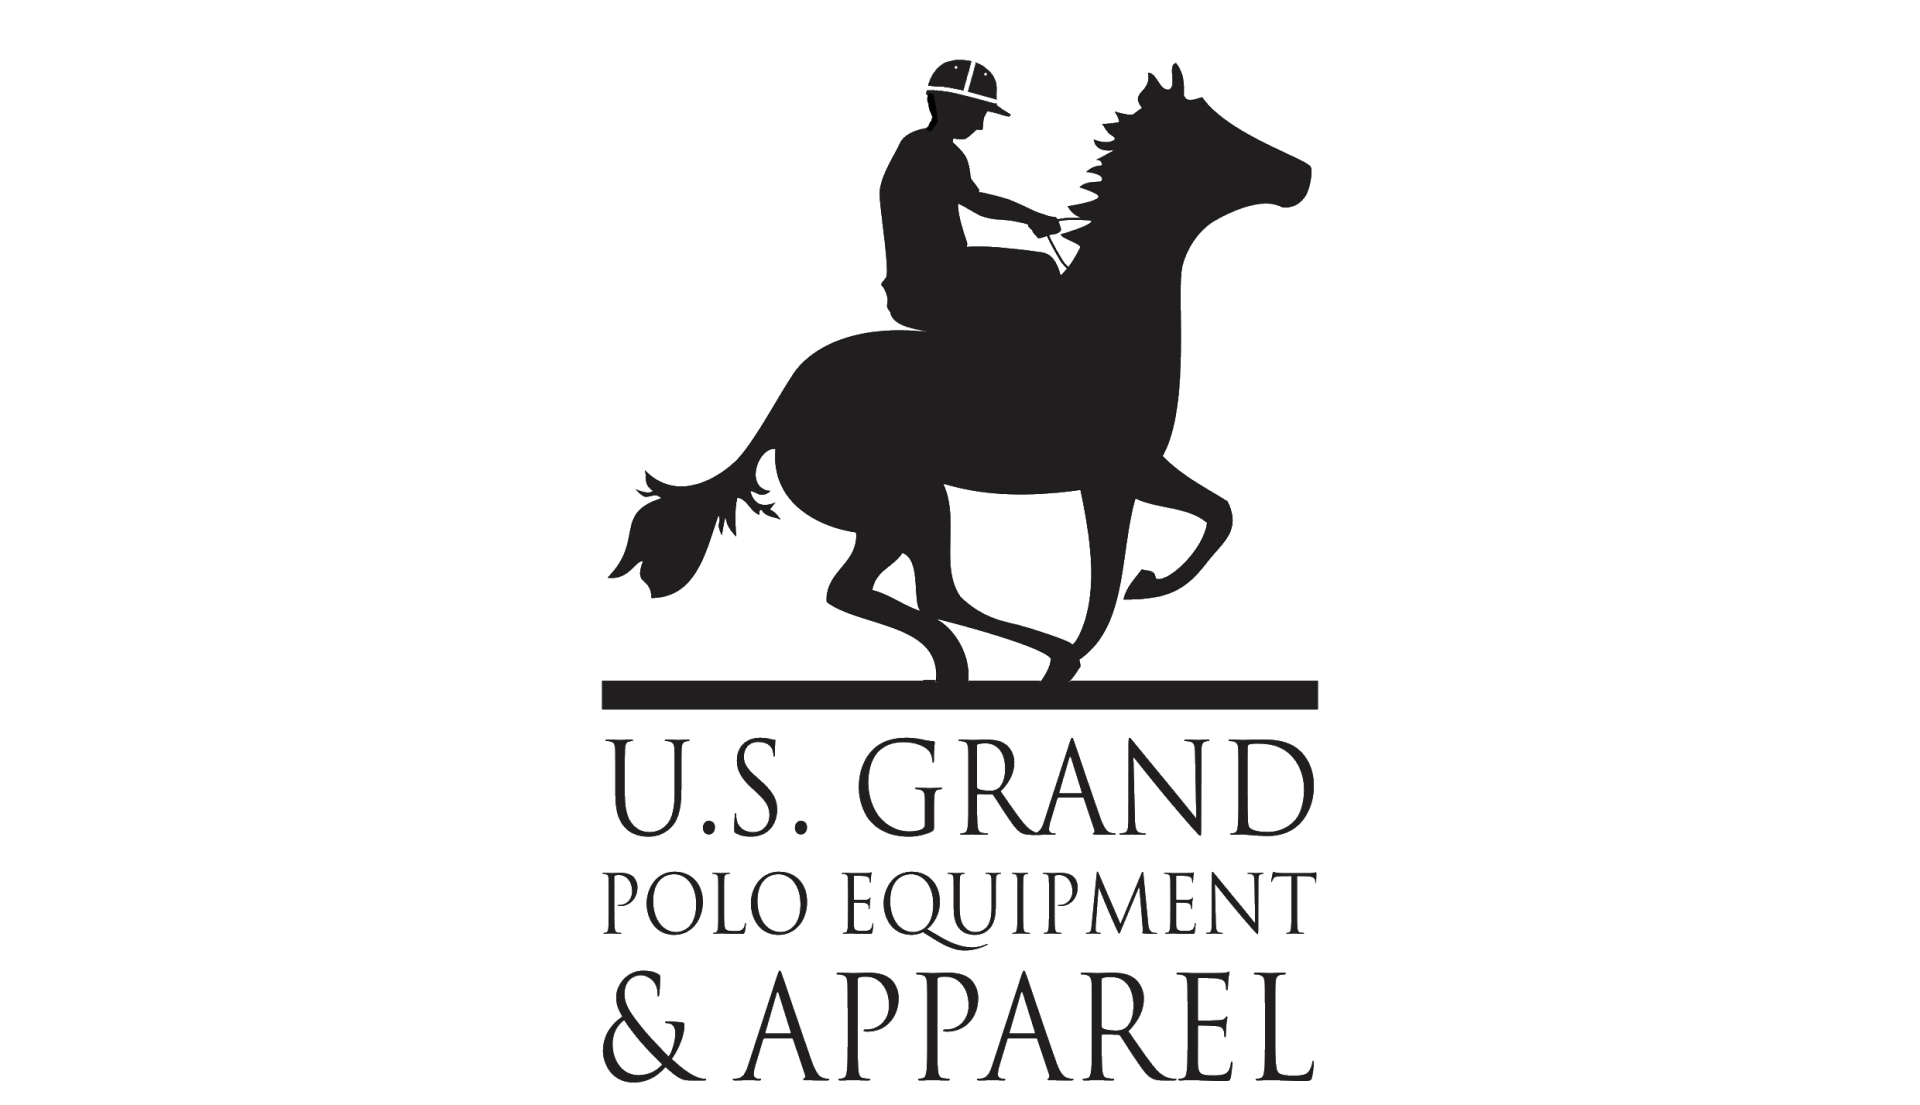 U.S Grand Polo equipment & apparel